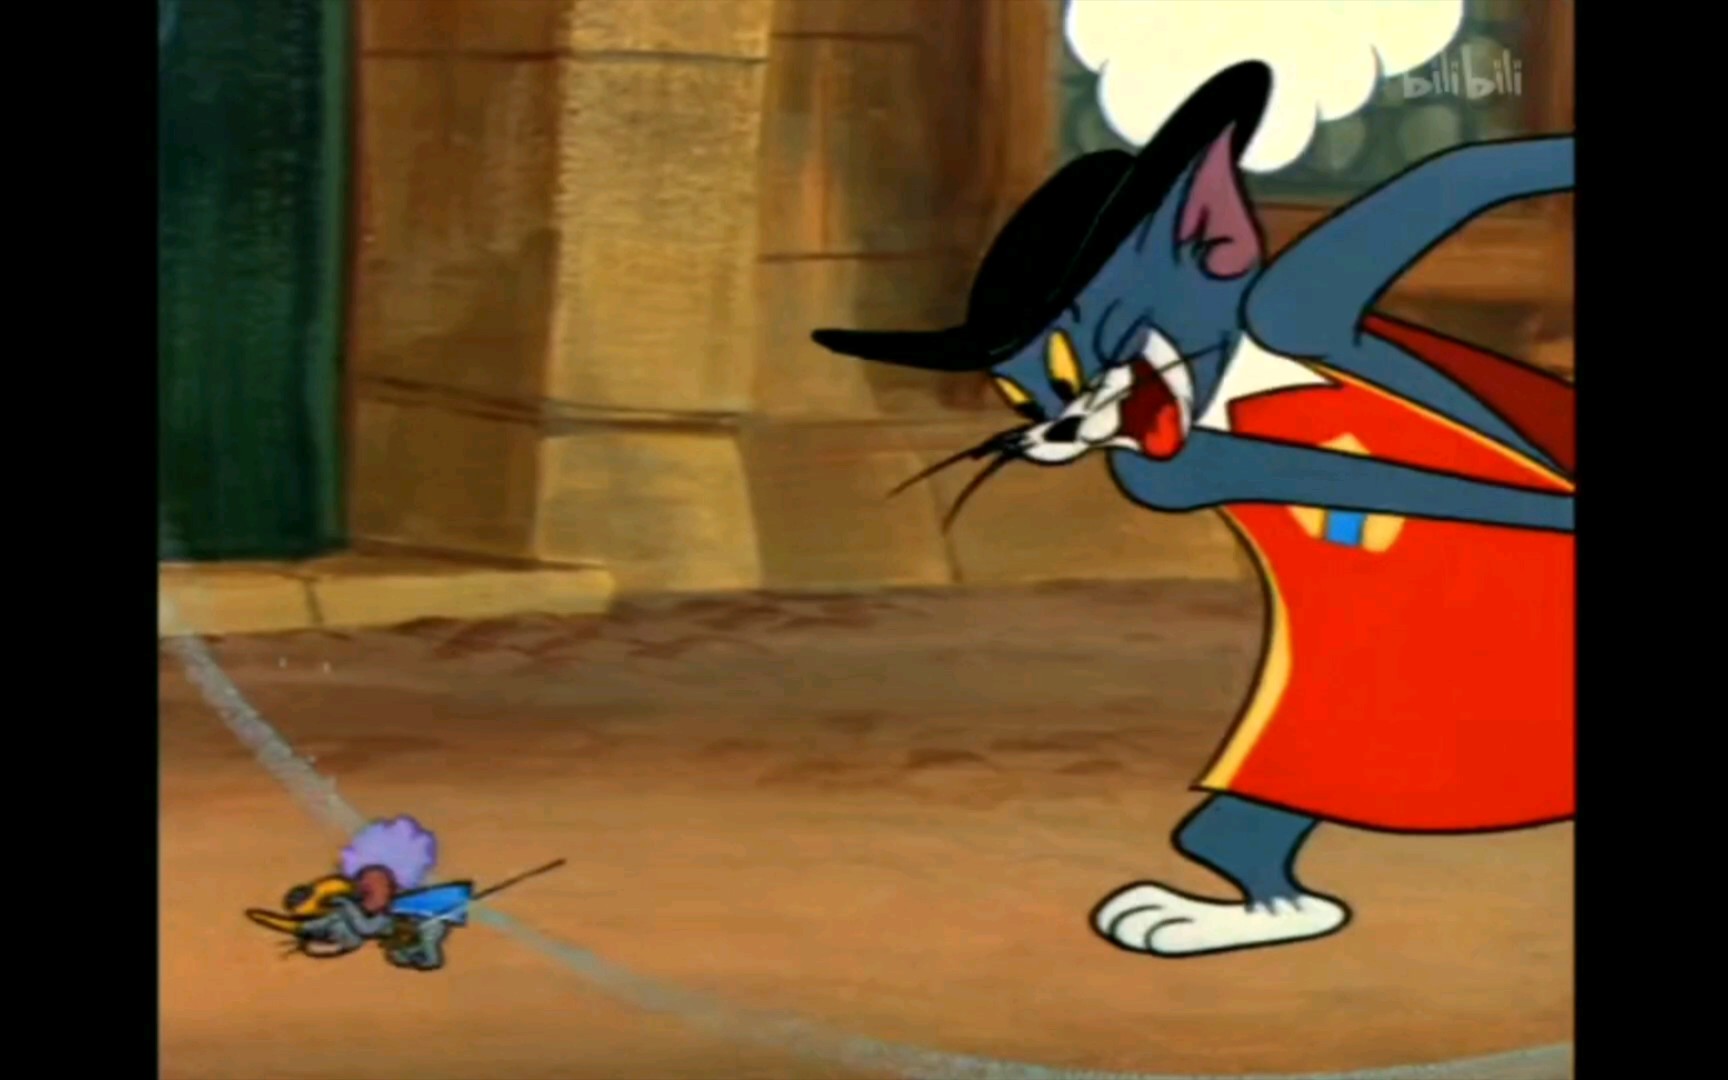 猫和老鼠汤姆击剑图片